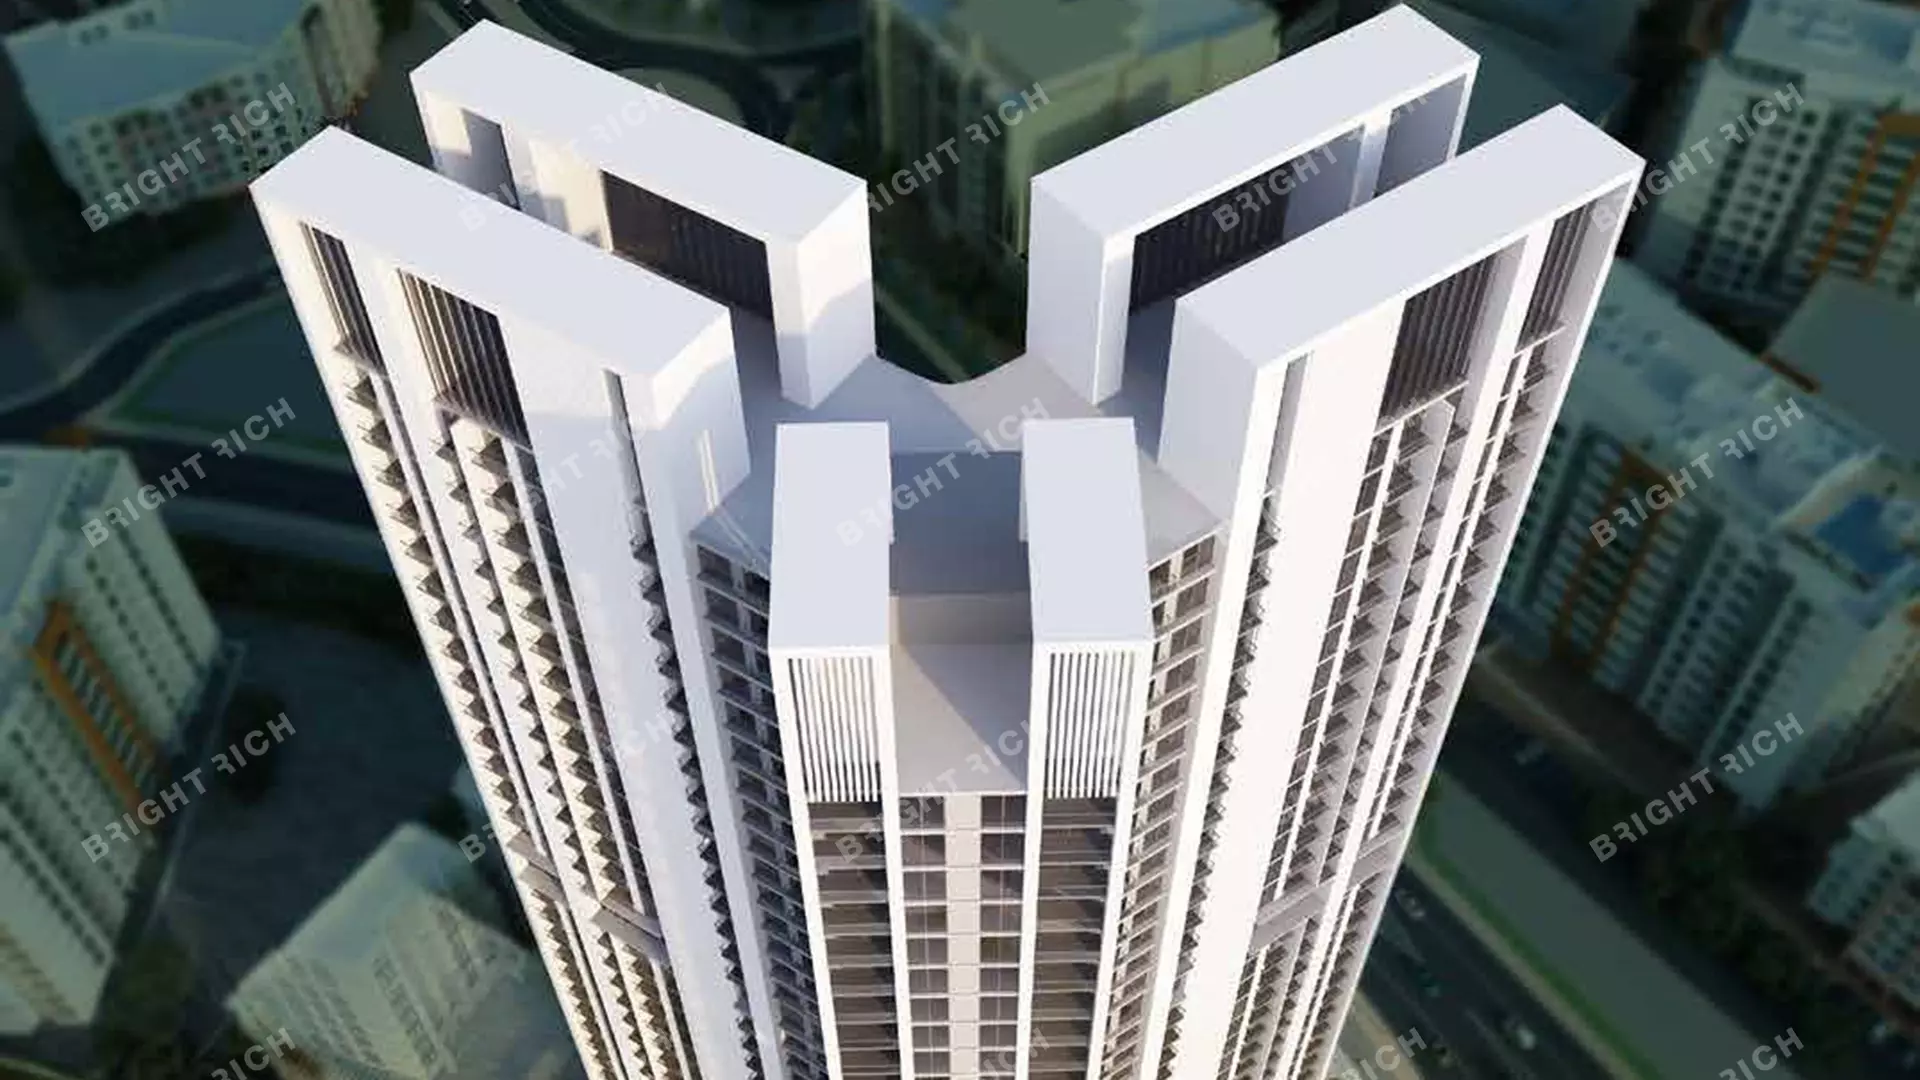 Skyz Residence, apart complex in Dubai - 2